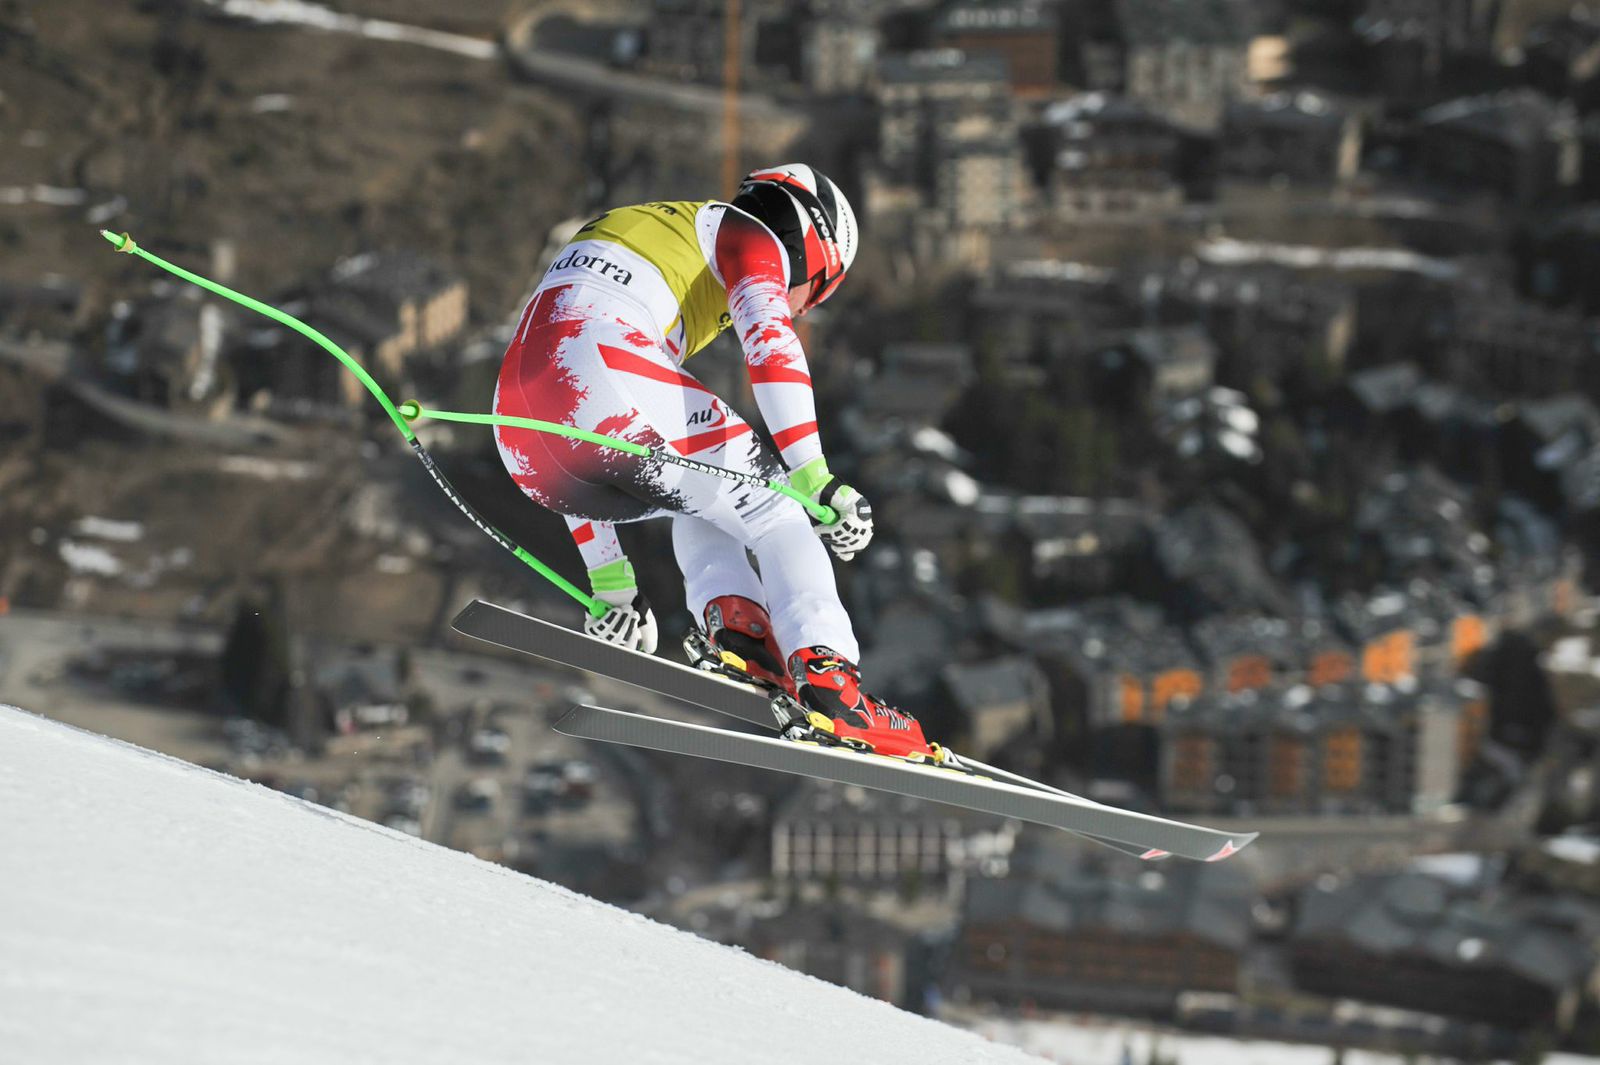 La Copa del Mundo de Esquí 2018-2019 tendrá 36 pruebas, la primera en Sölden y la última en Soldeu